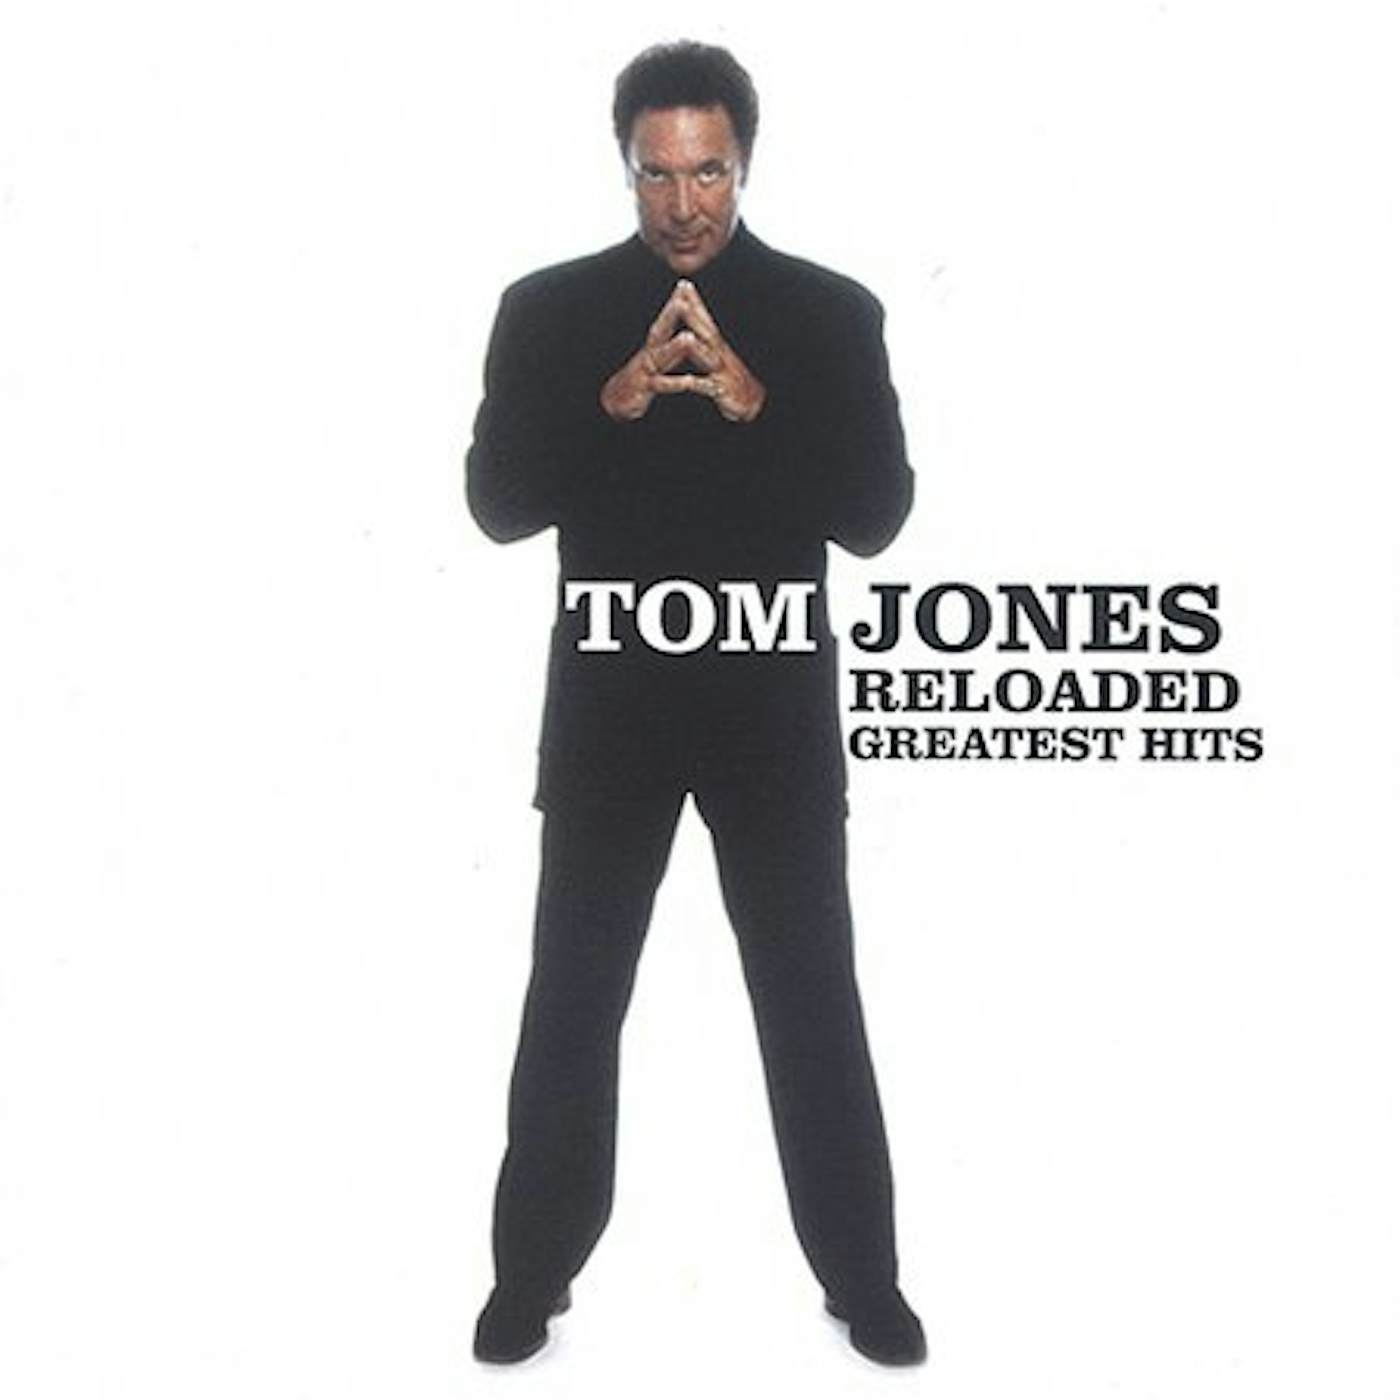 Tom Jones RELOADED: GREATEST HITS CD